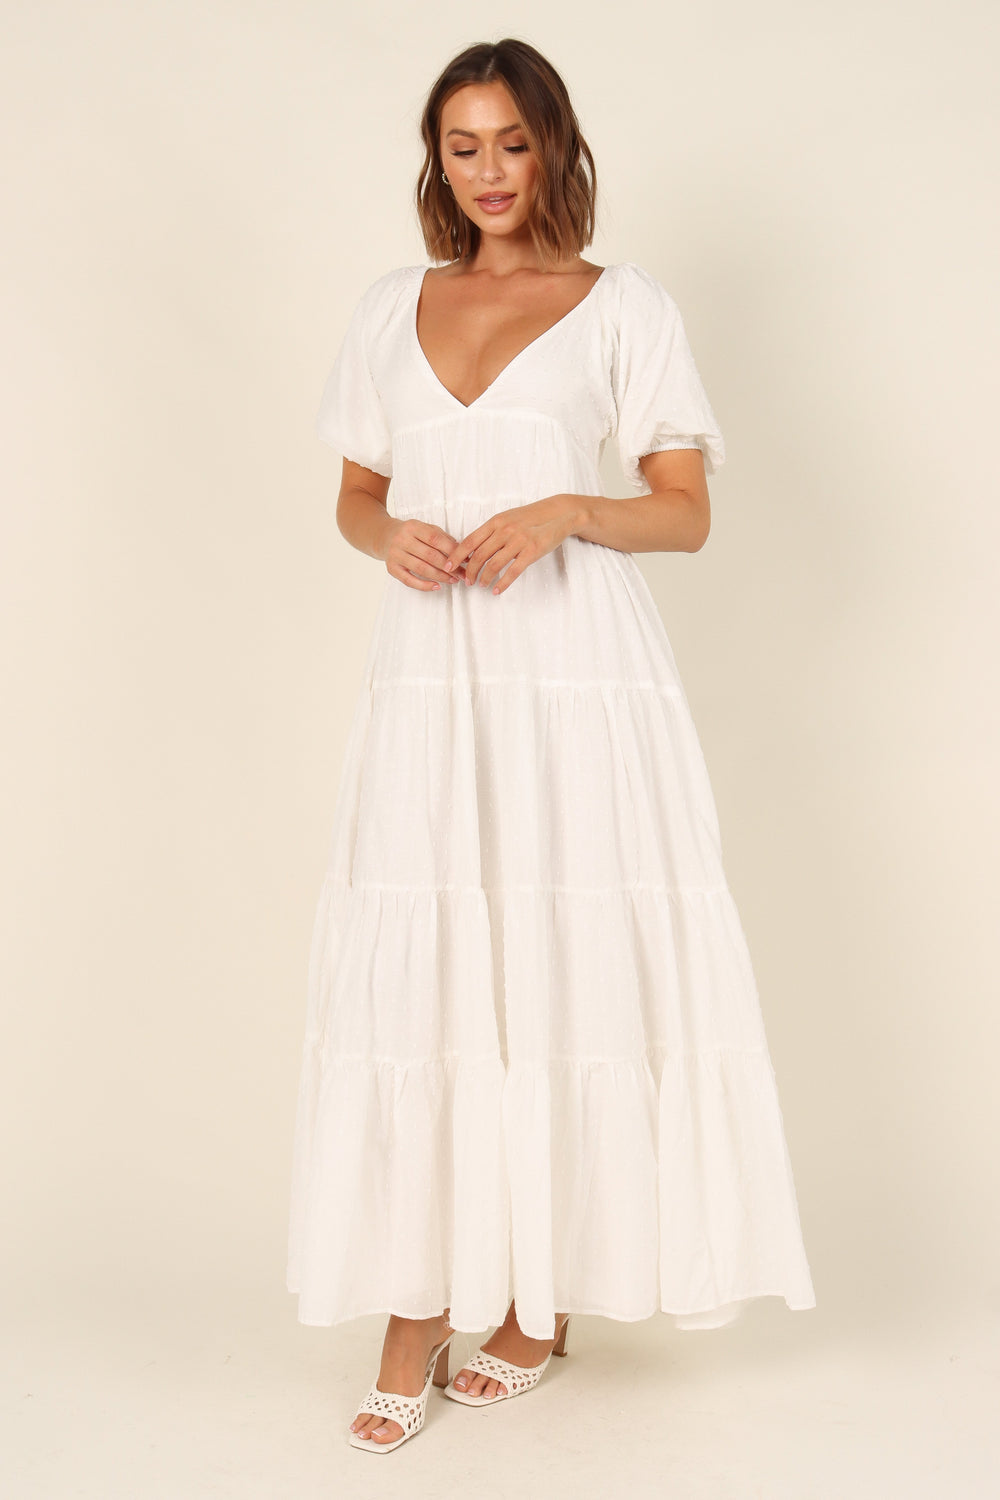 DRESSES @Harper Dress - White Spot (waiting on bulk)